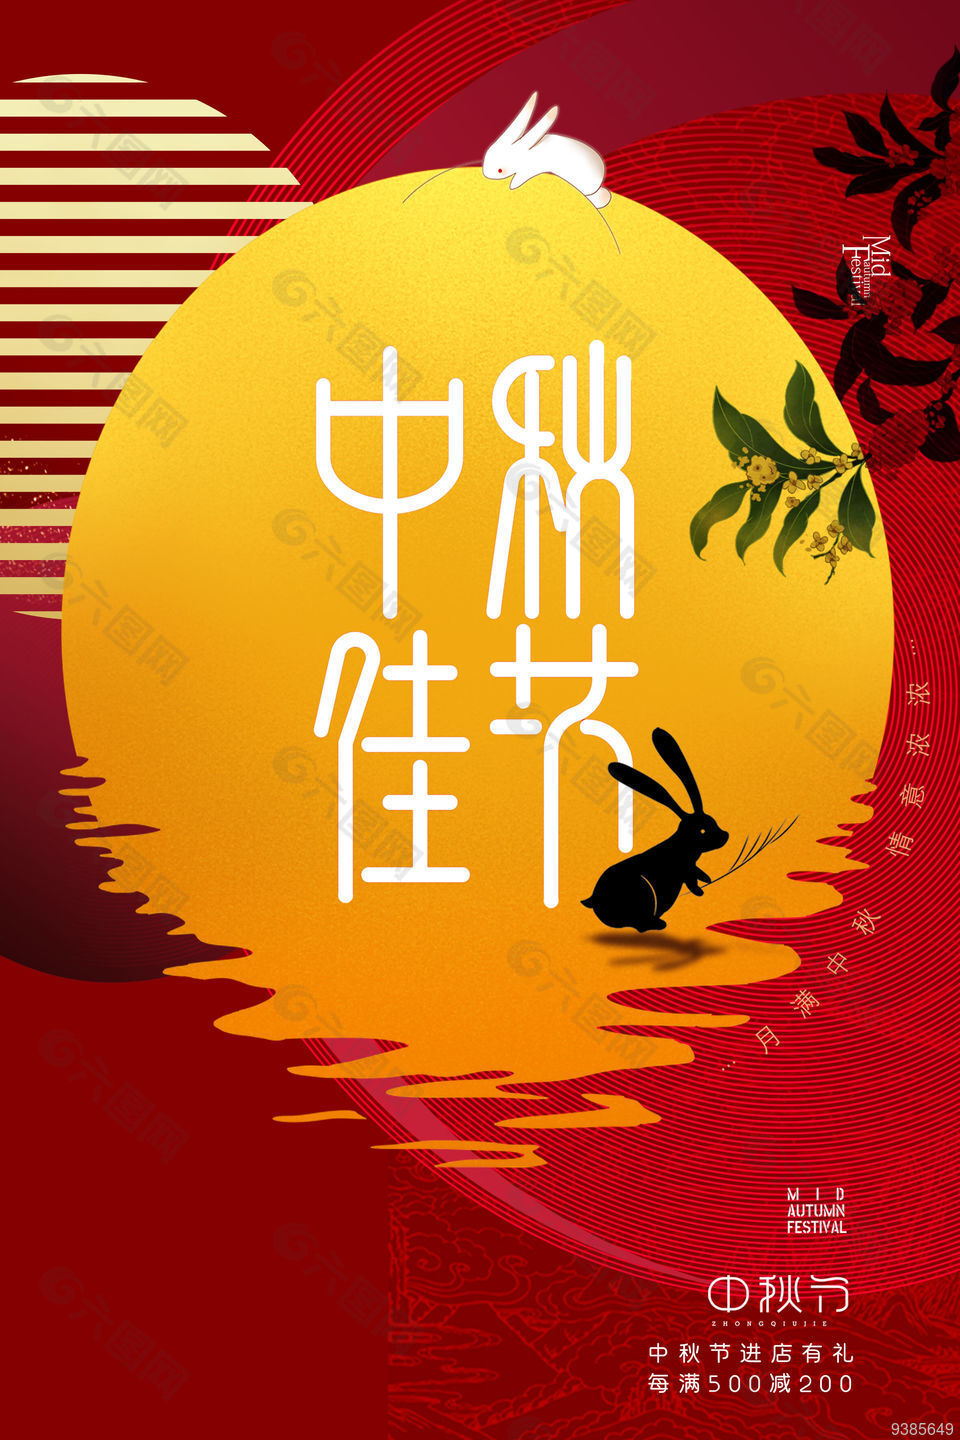 中秋节创意海报